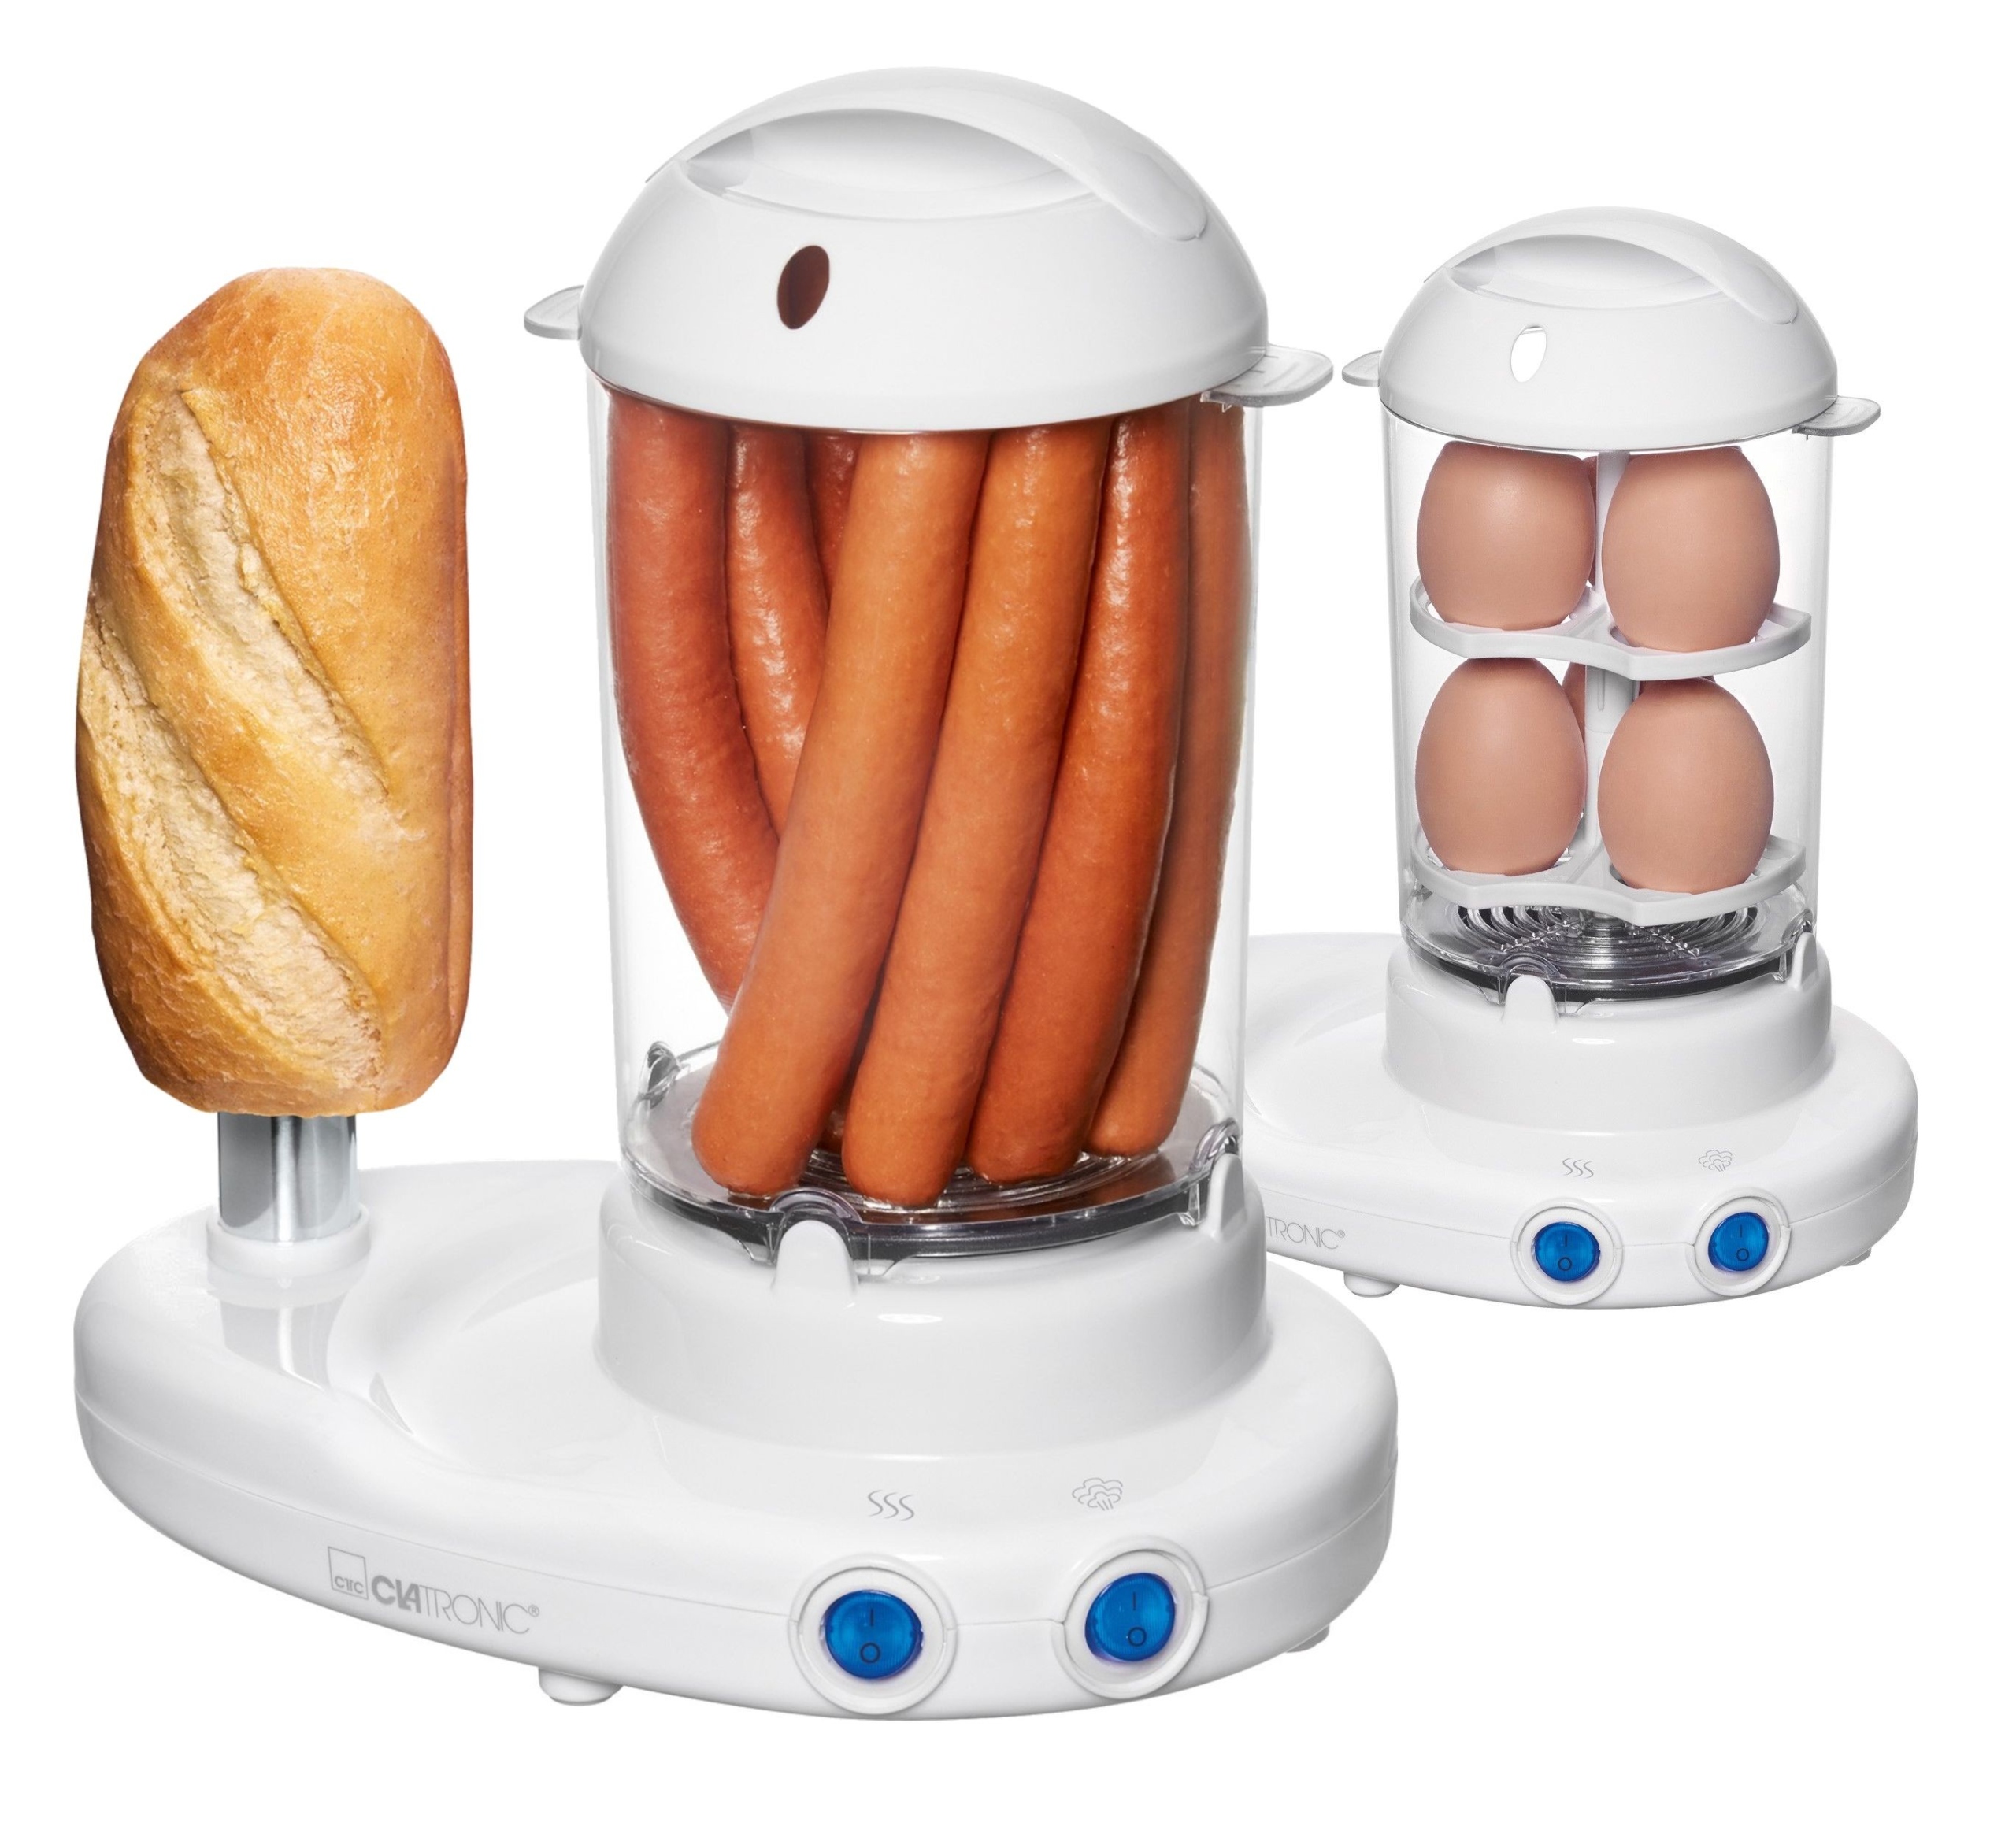 

Urządzenie Do Hot-dogów Gotowanie Jajek Clatronic